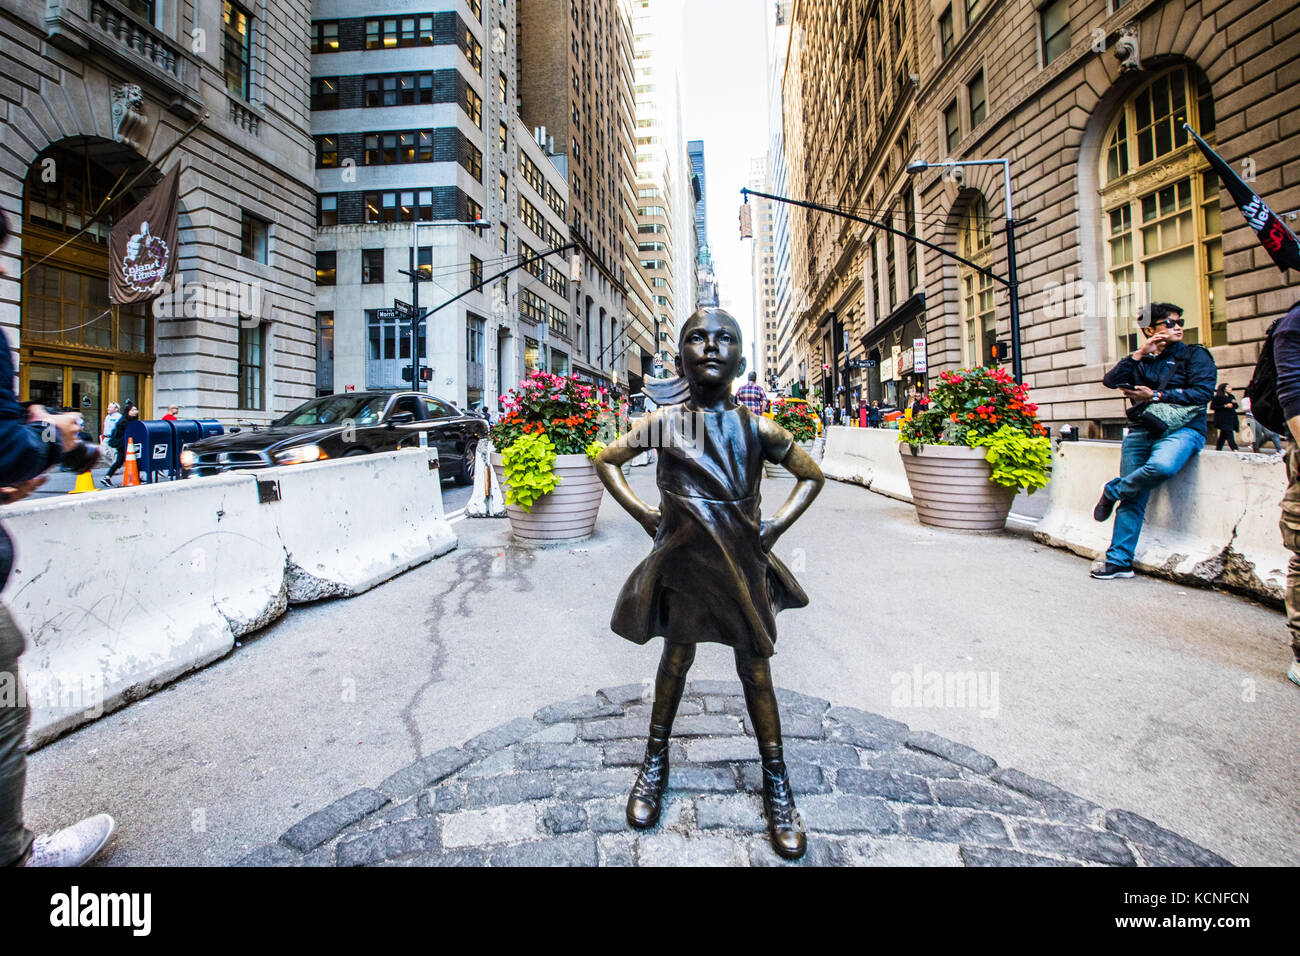 Jeune fille intrépide, sculpture en bronze de Kristen Visbal, centre-ville de Manhattan, New York City Banque D'Images